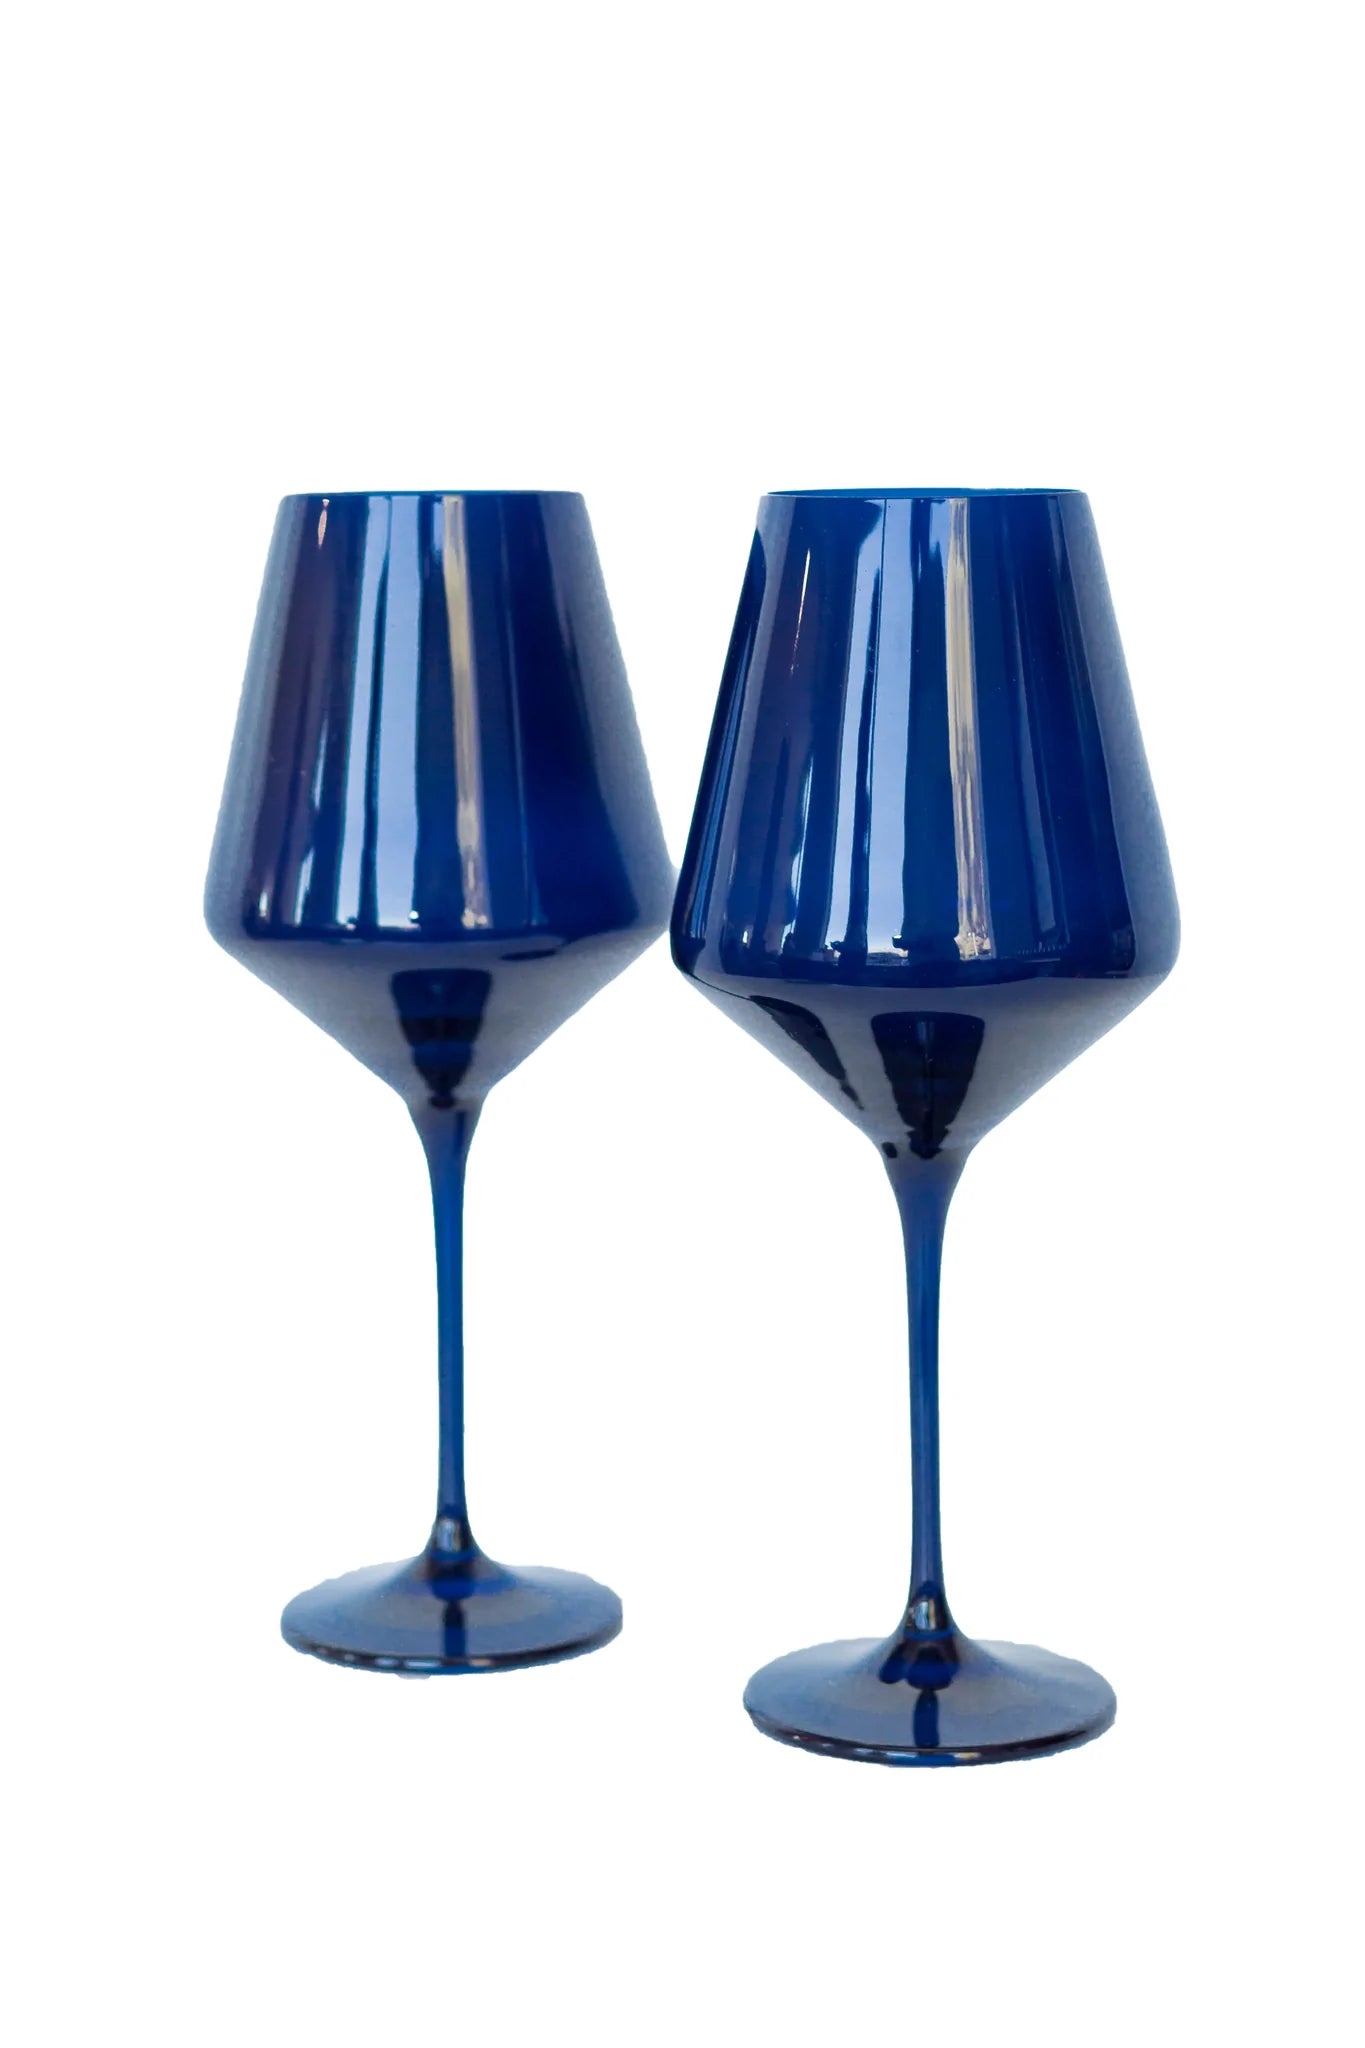 Estelle Colored Wine Stemless Glasses - Set of 6 {Cobalt Blue}